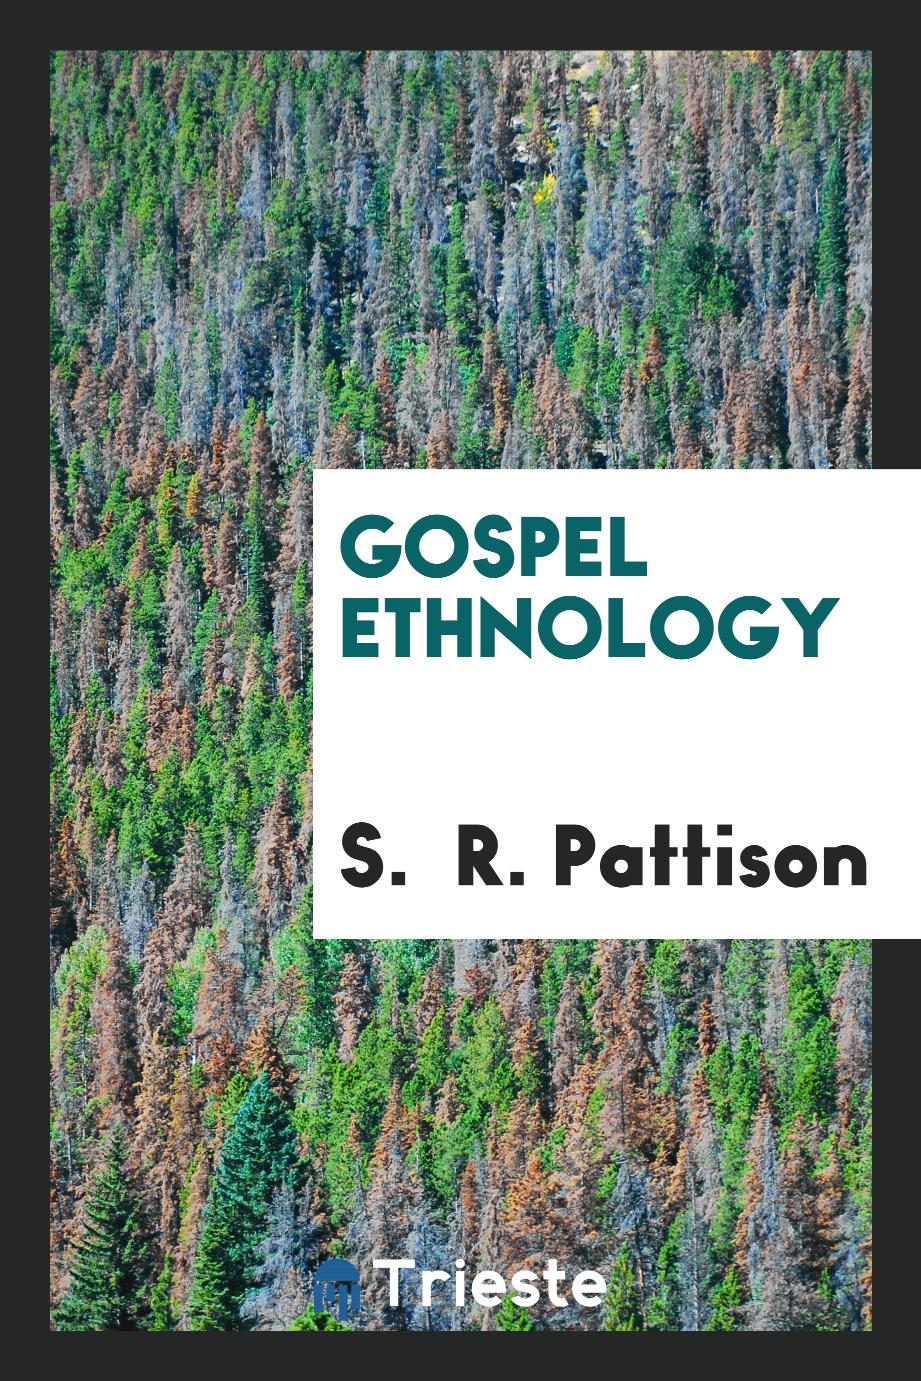 Gospel ethnology